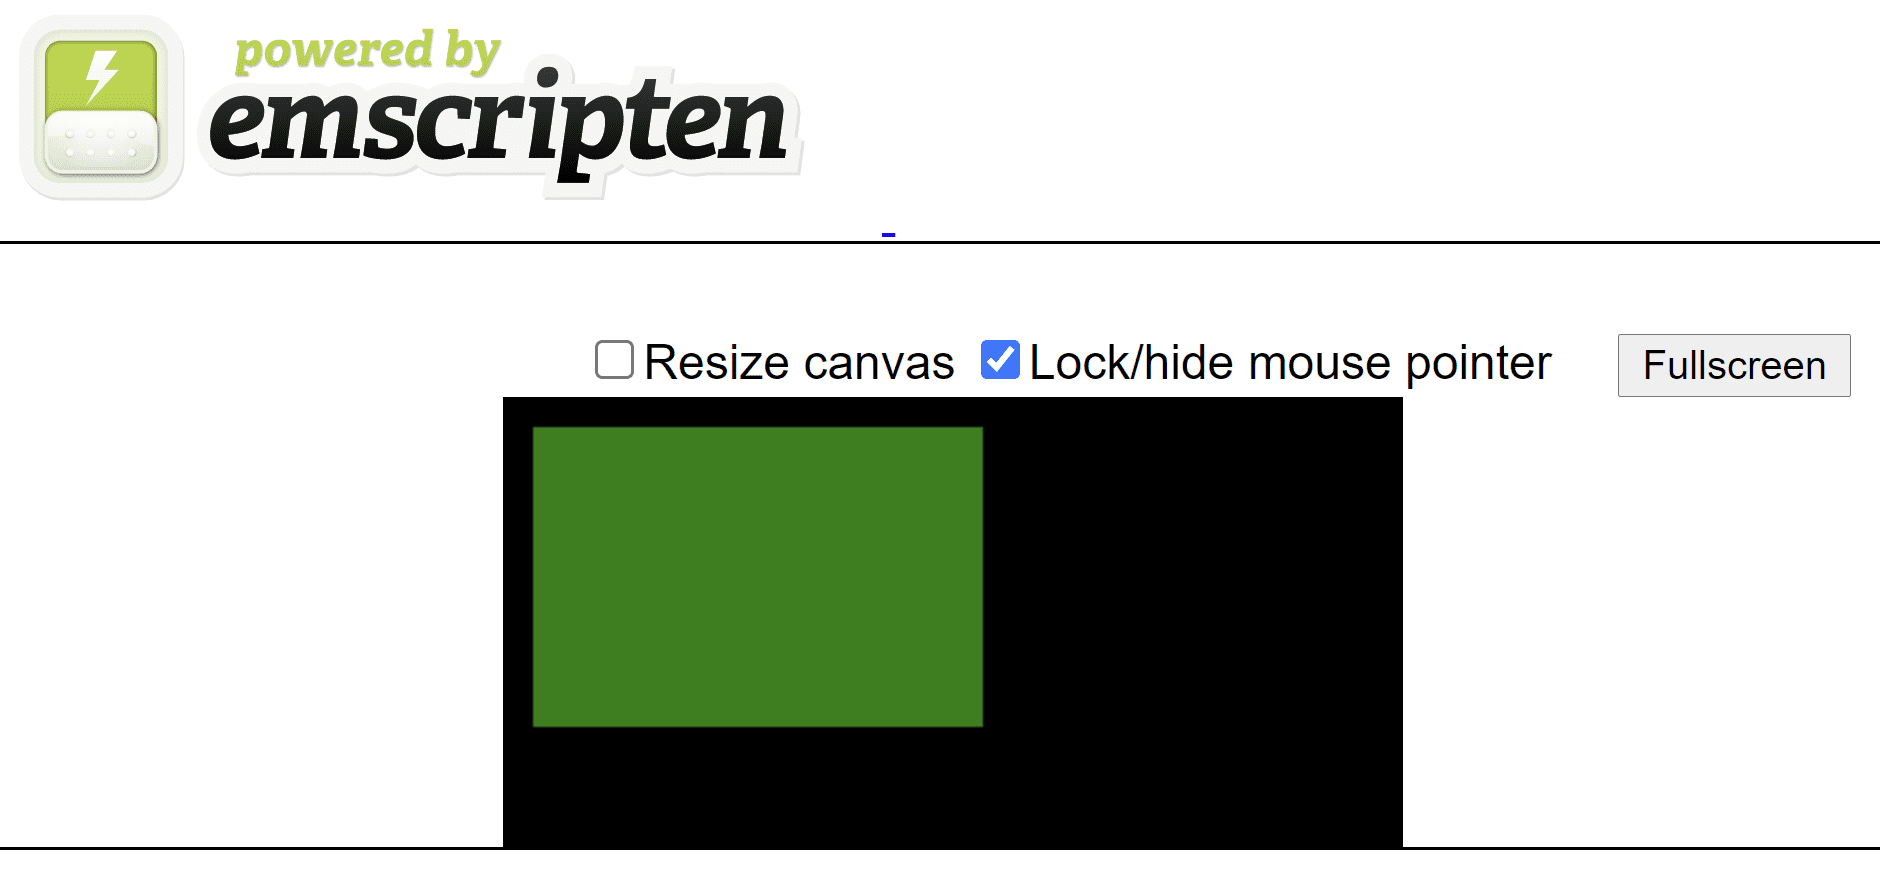 Trang HTML do emscripten tạo cho thấy một hình chữ nhật màu xanh lục trên canvas màu đen.